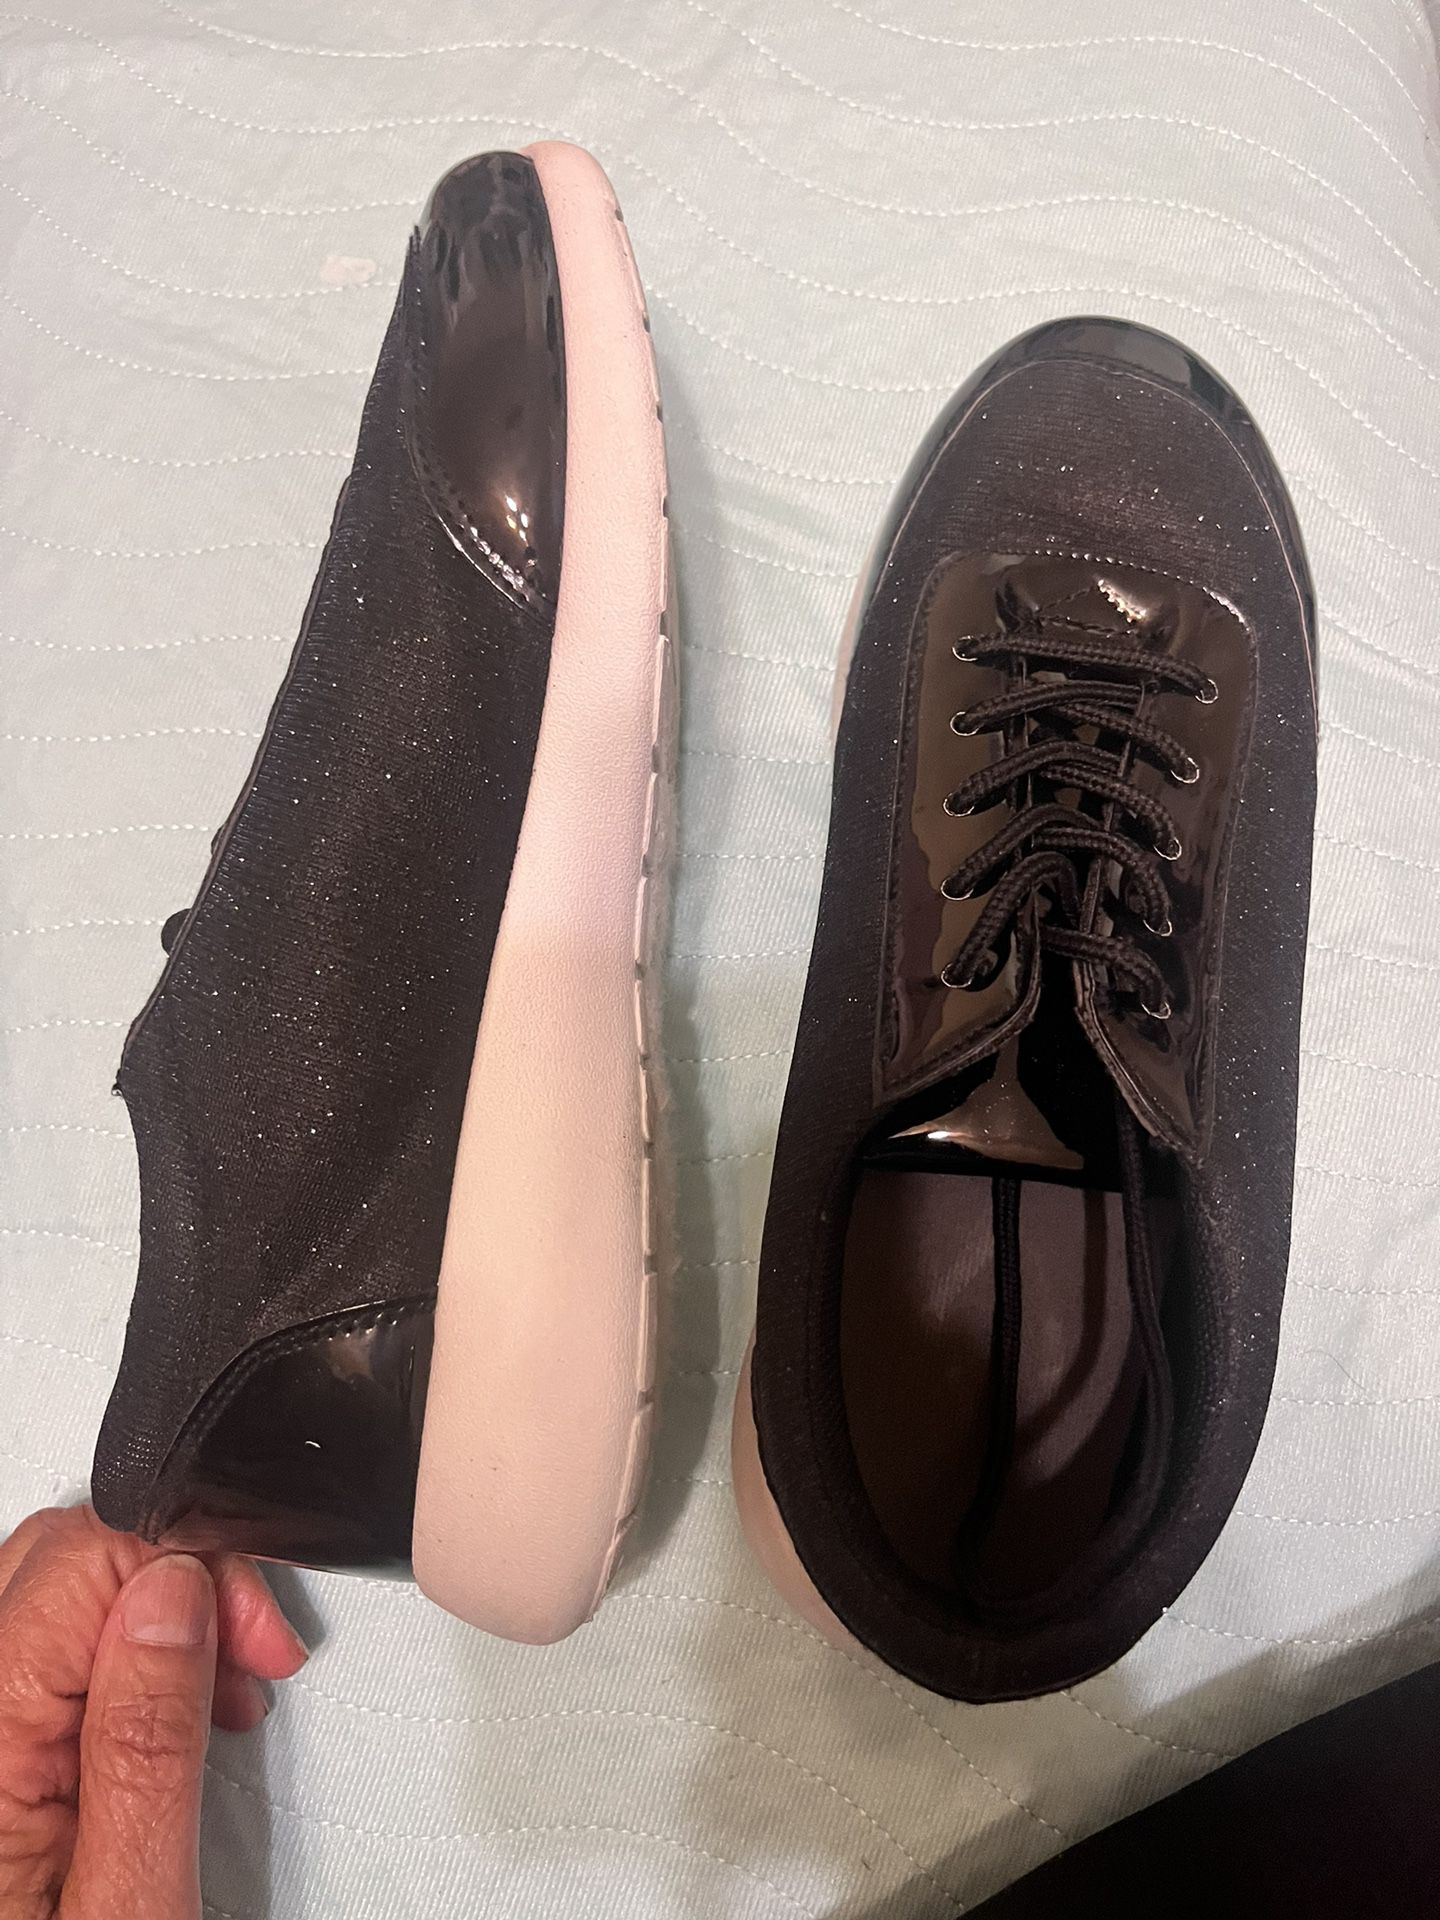 Sneakers. Black $12. Size 10 Ladies